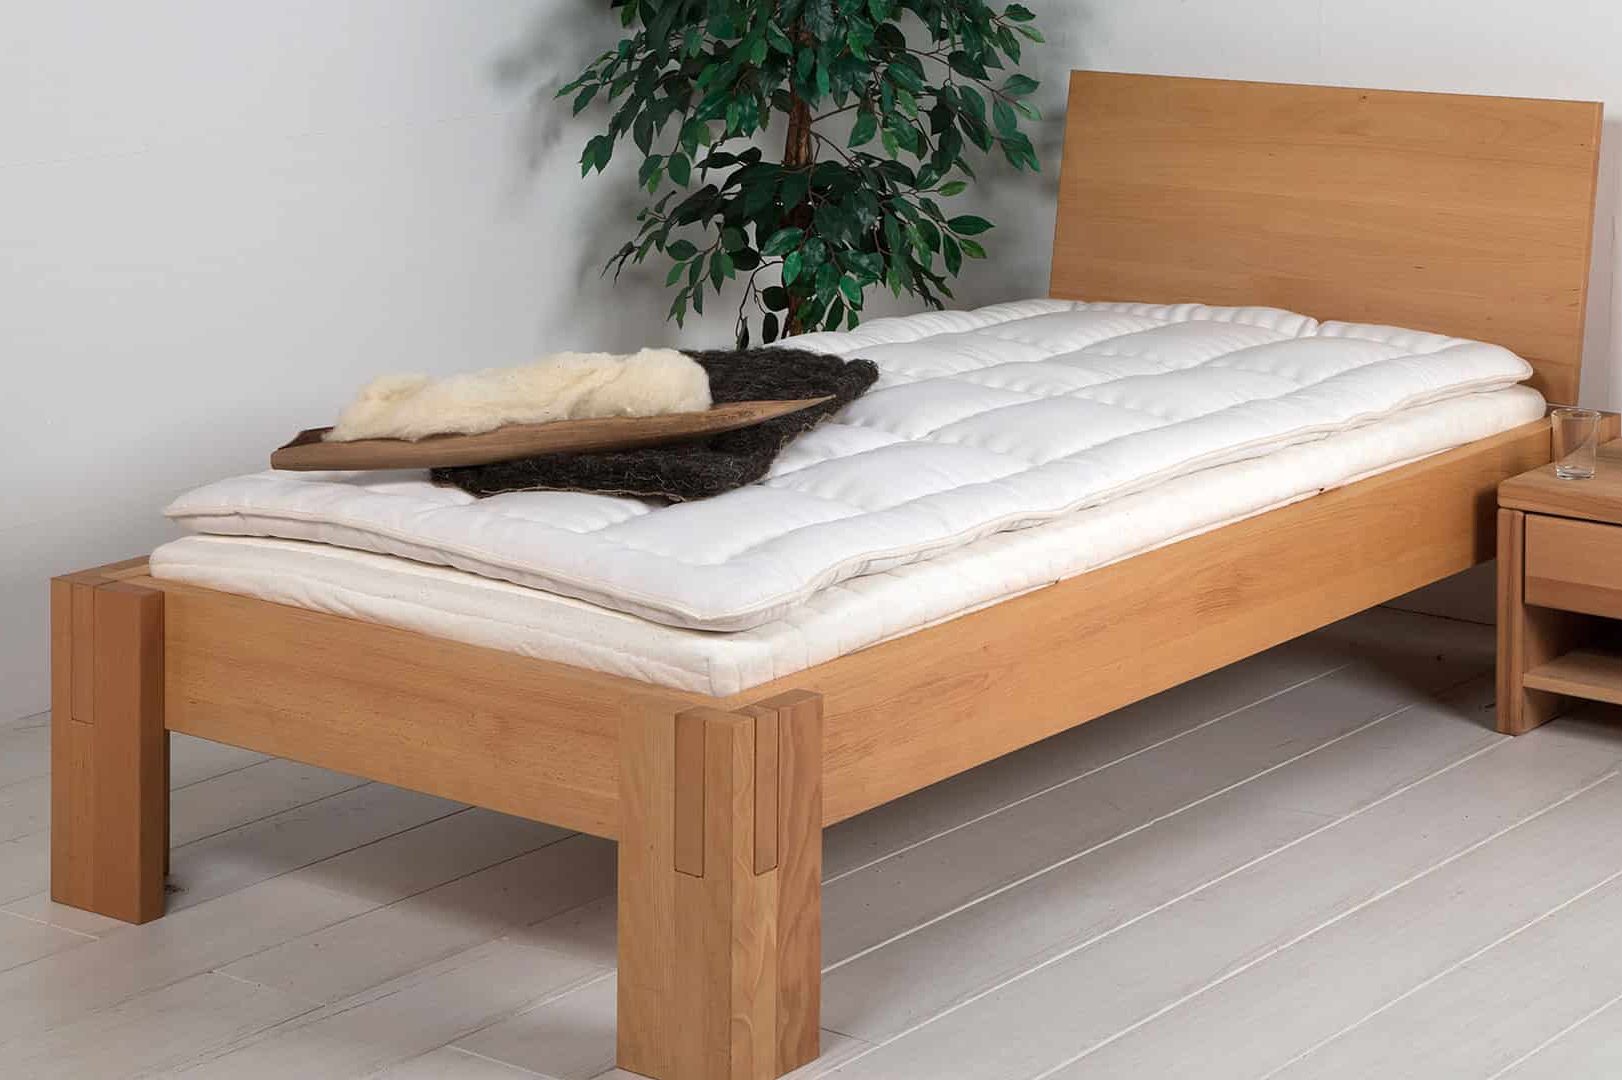 شراء سرير خشب مفرد مصر باسعار مثالية